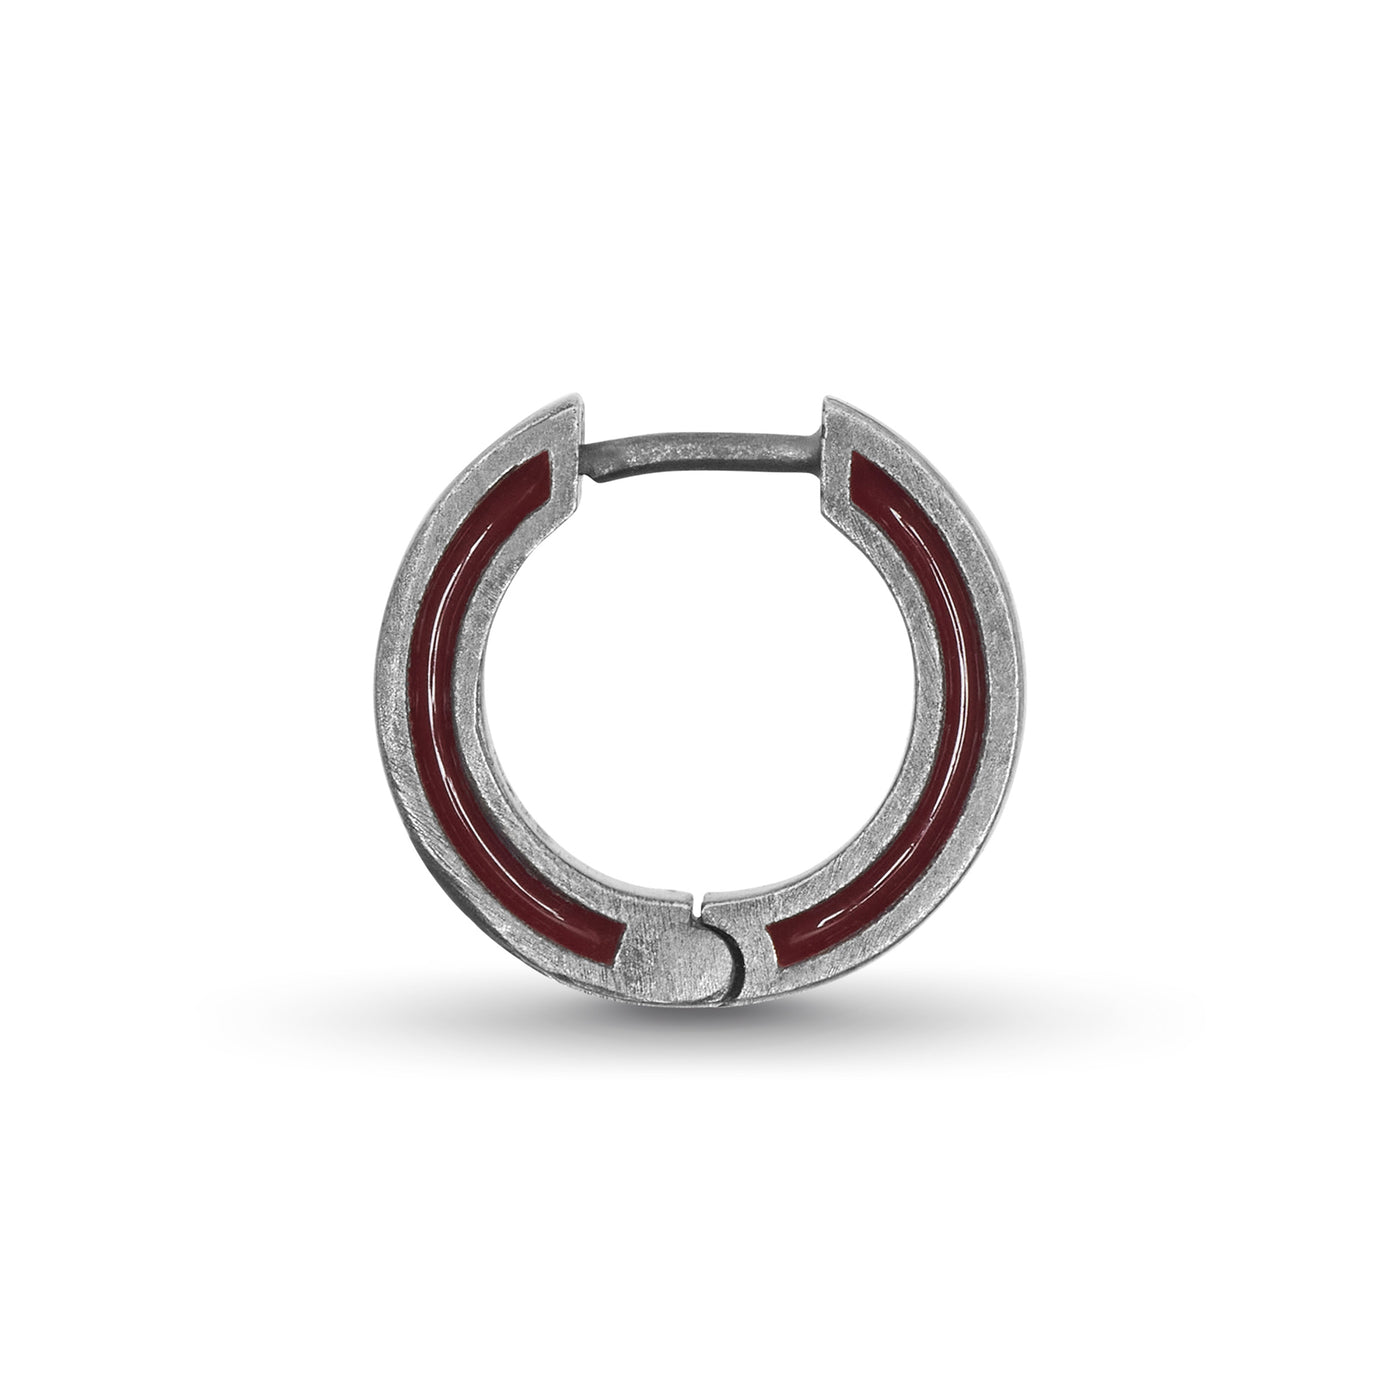 ELAN Oxidized Silver Mono Earring with red enamel